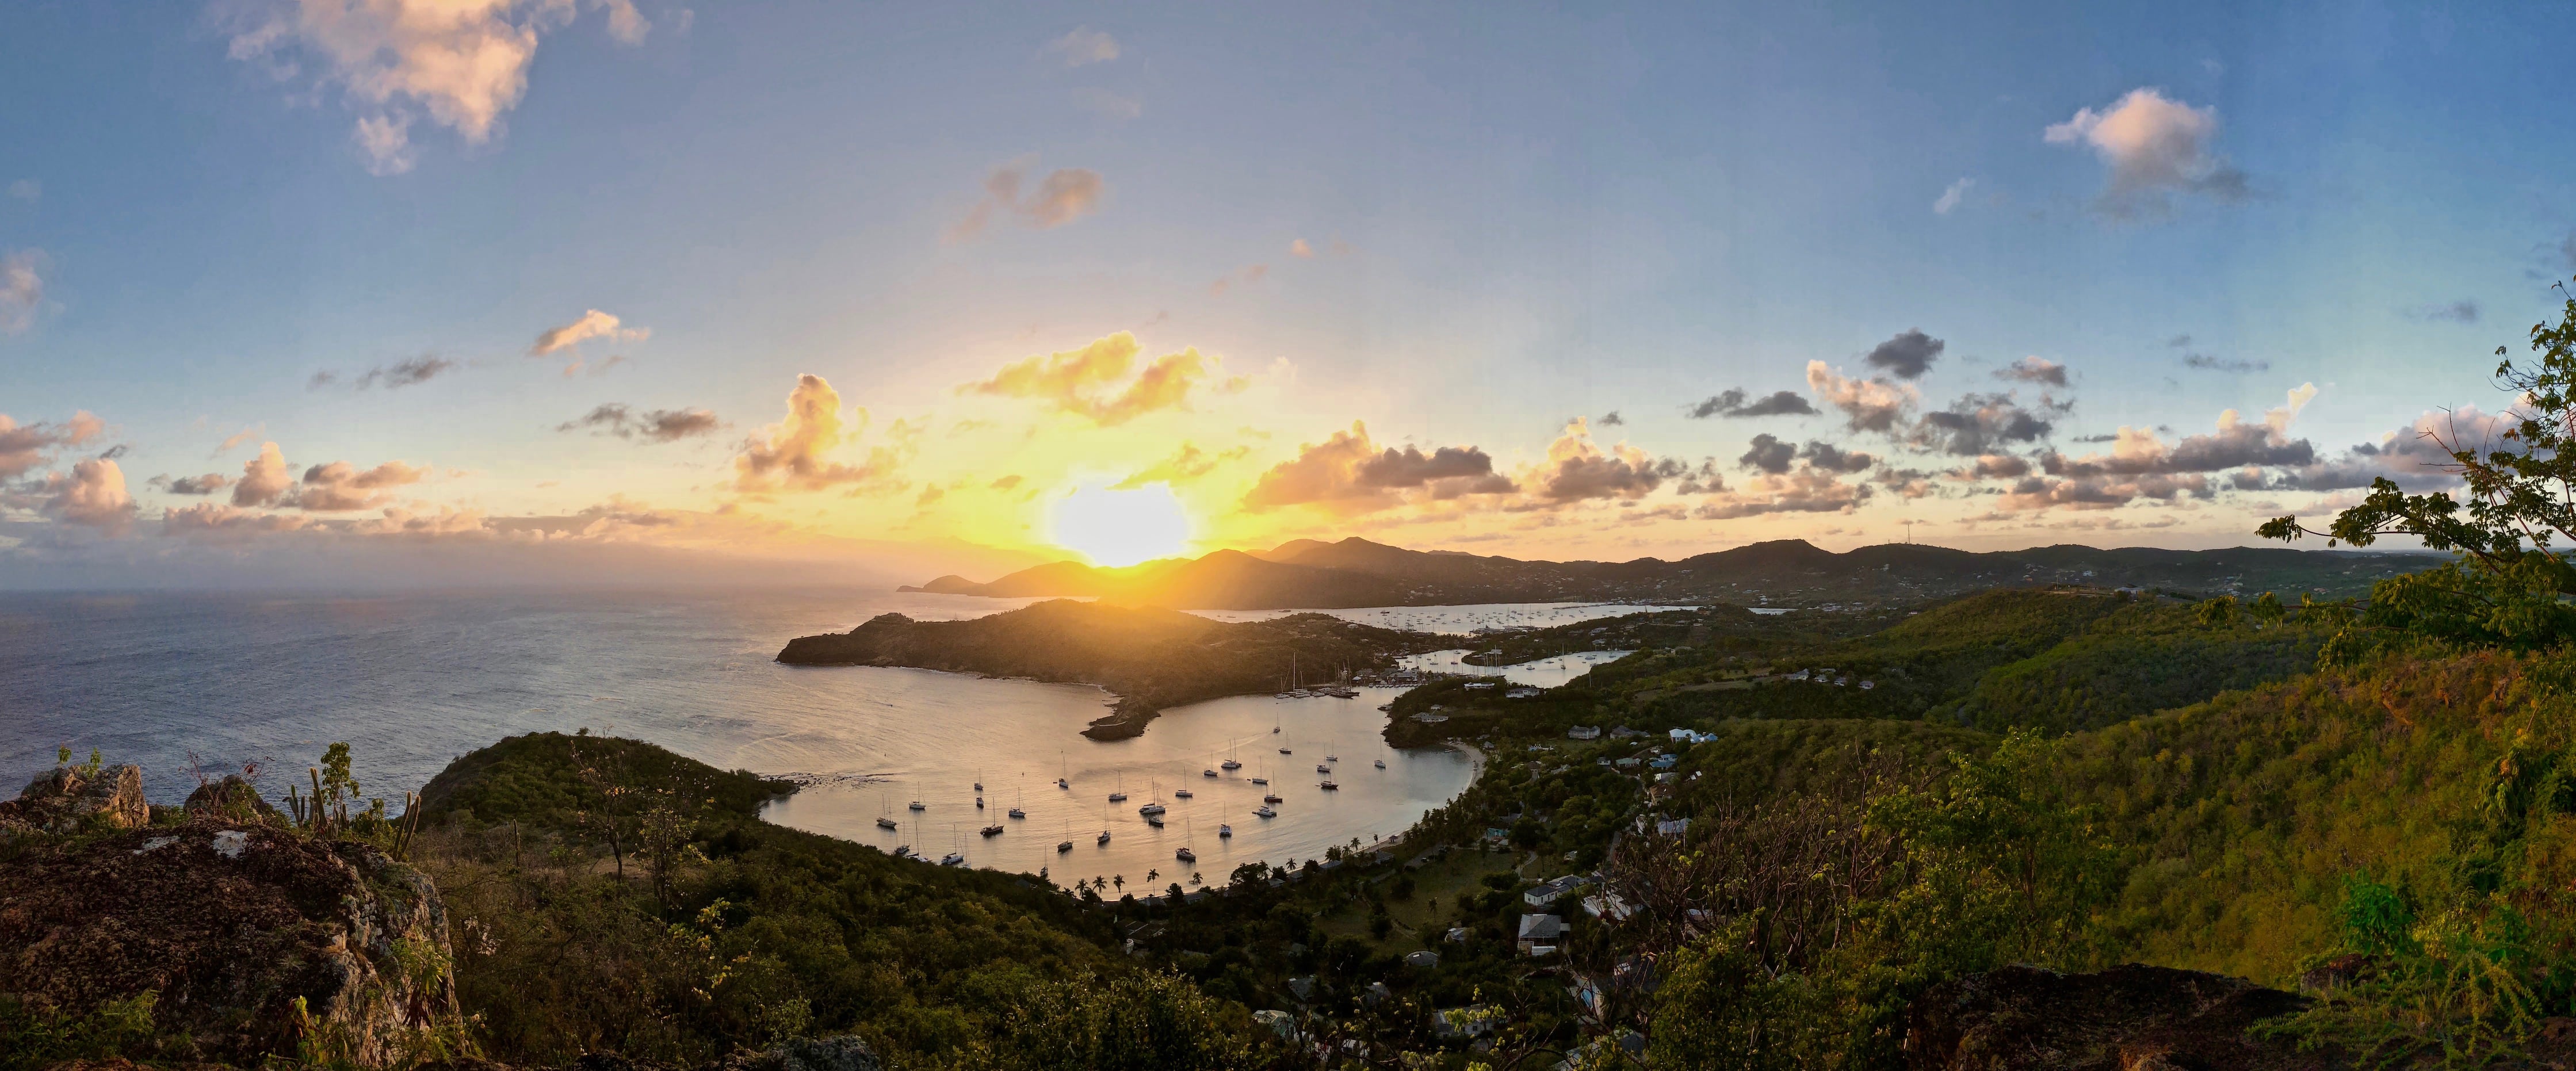 Beautiful Antigua at Sundown